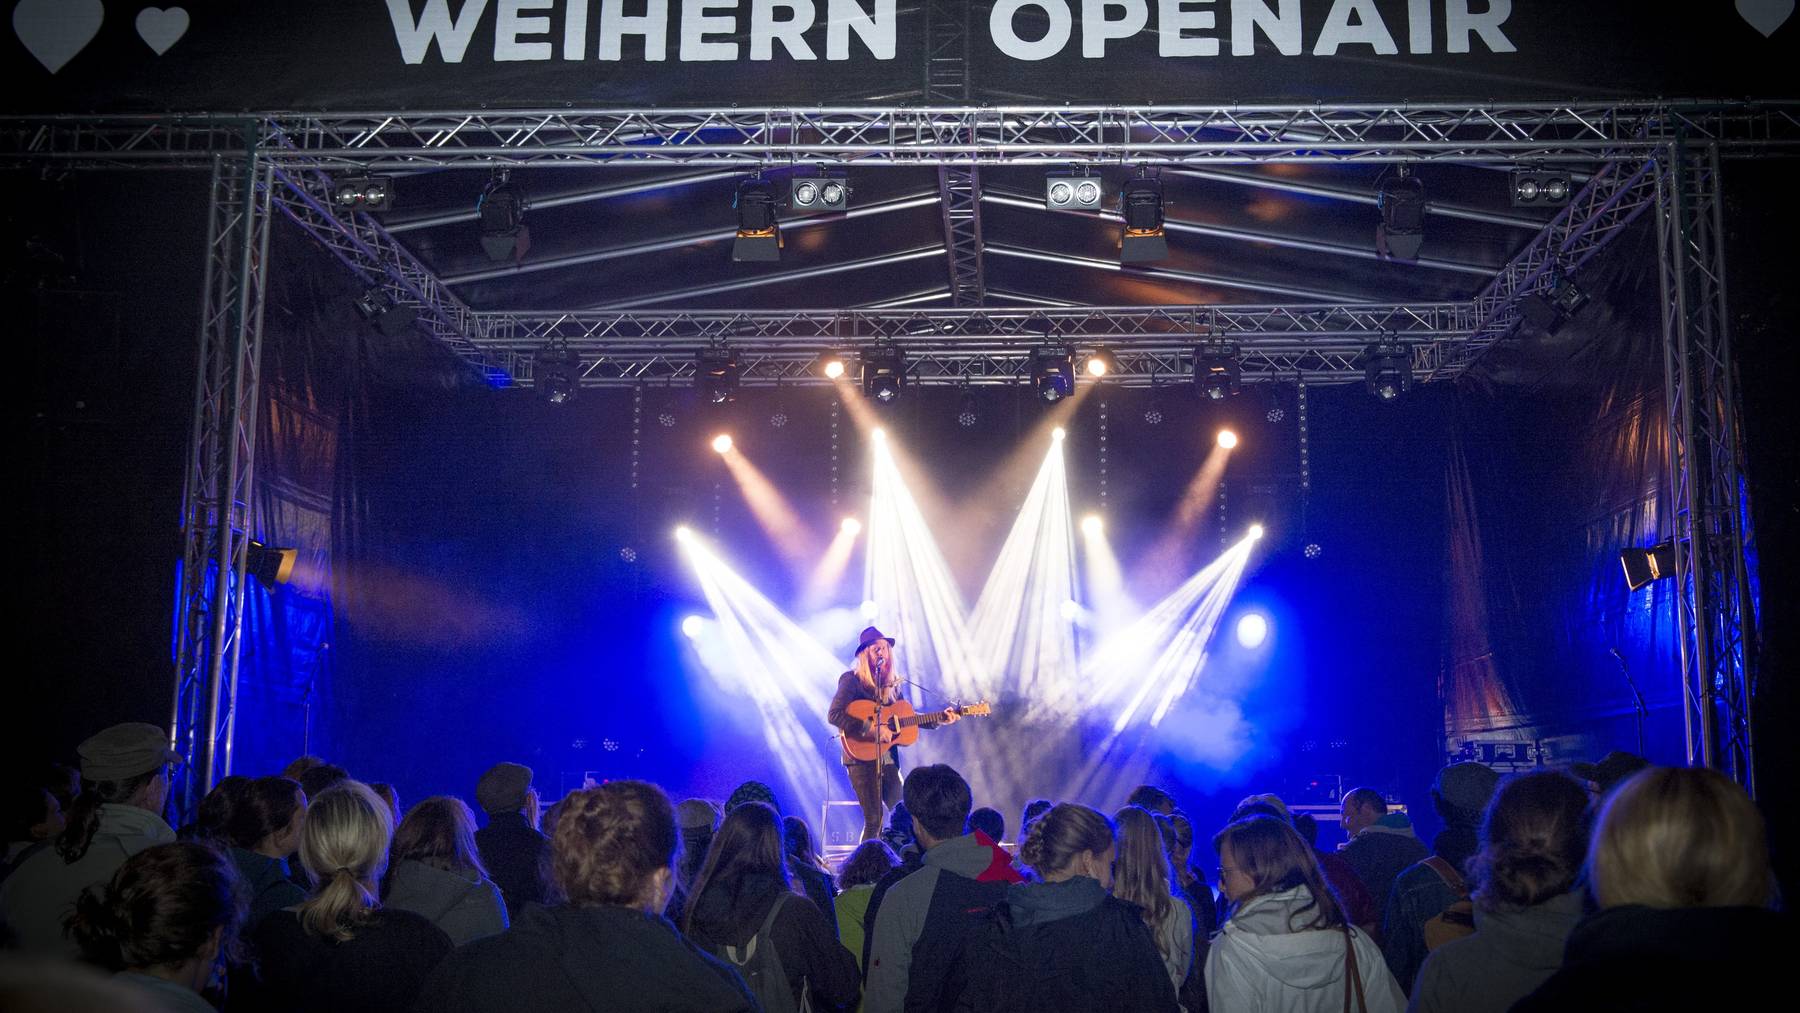 Das Weihern Openair Festival kann nicht mehr auf Dreilinden stattfinden. (Archiv)